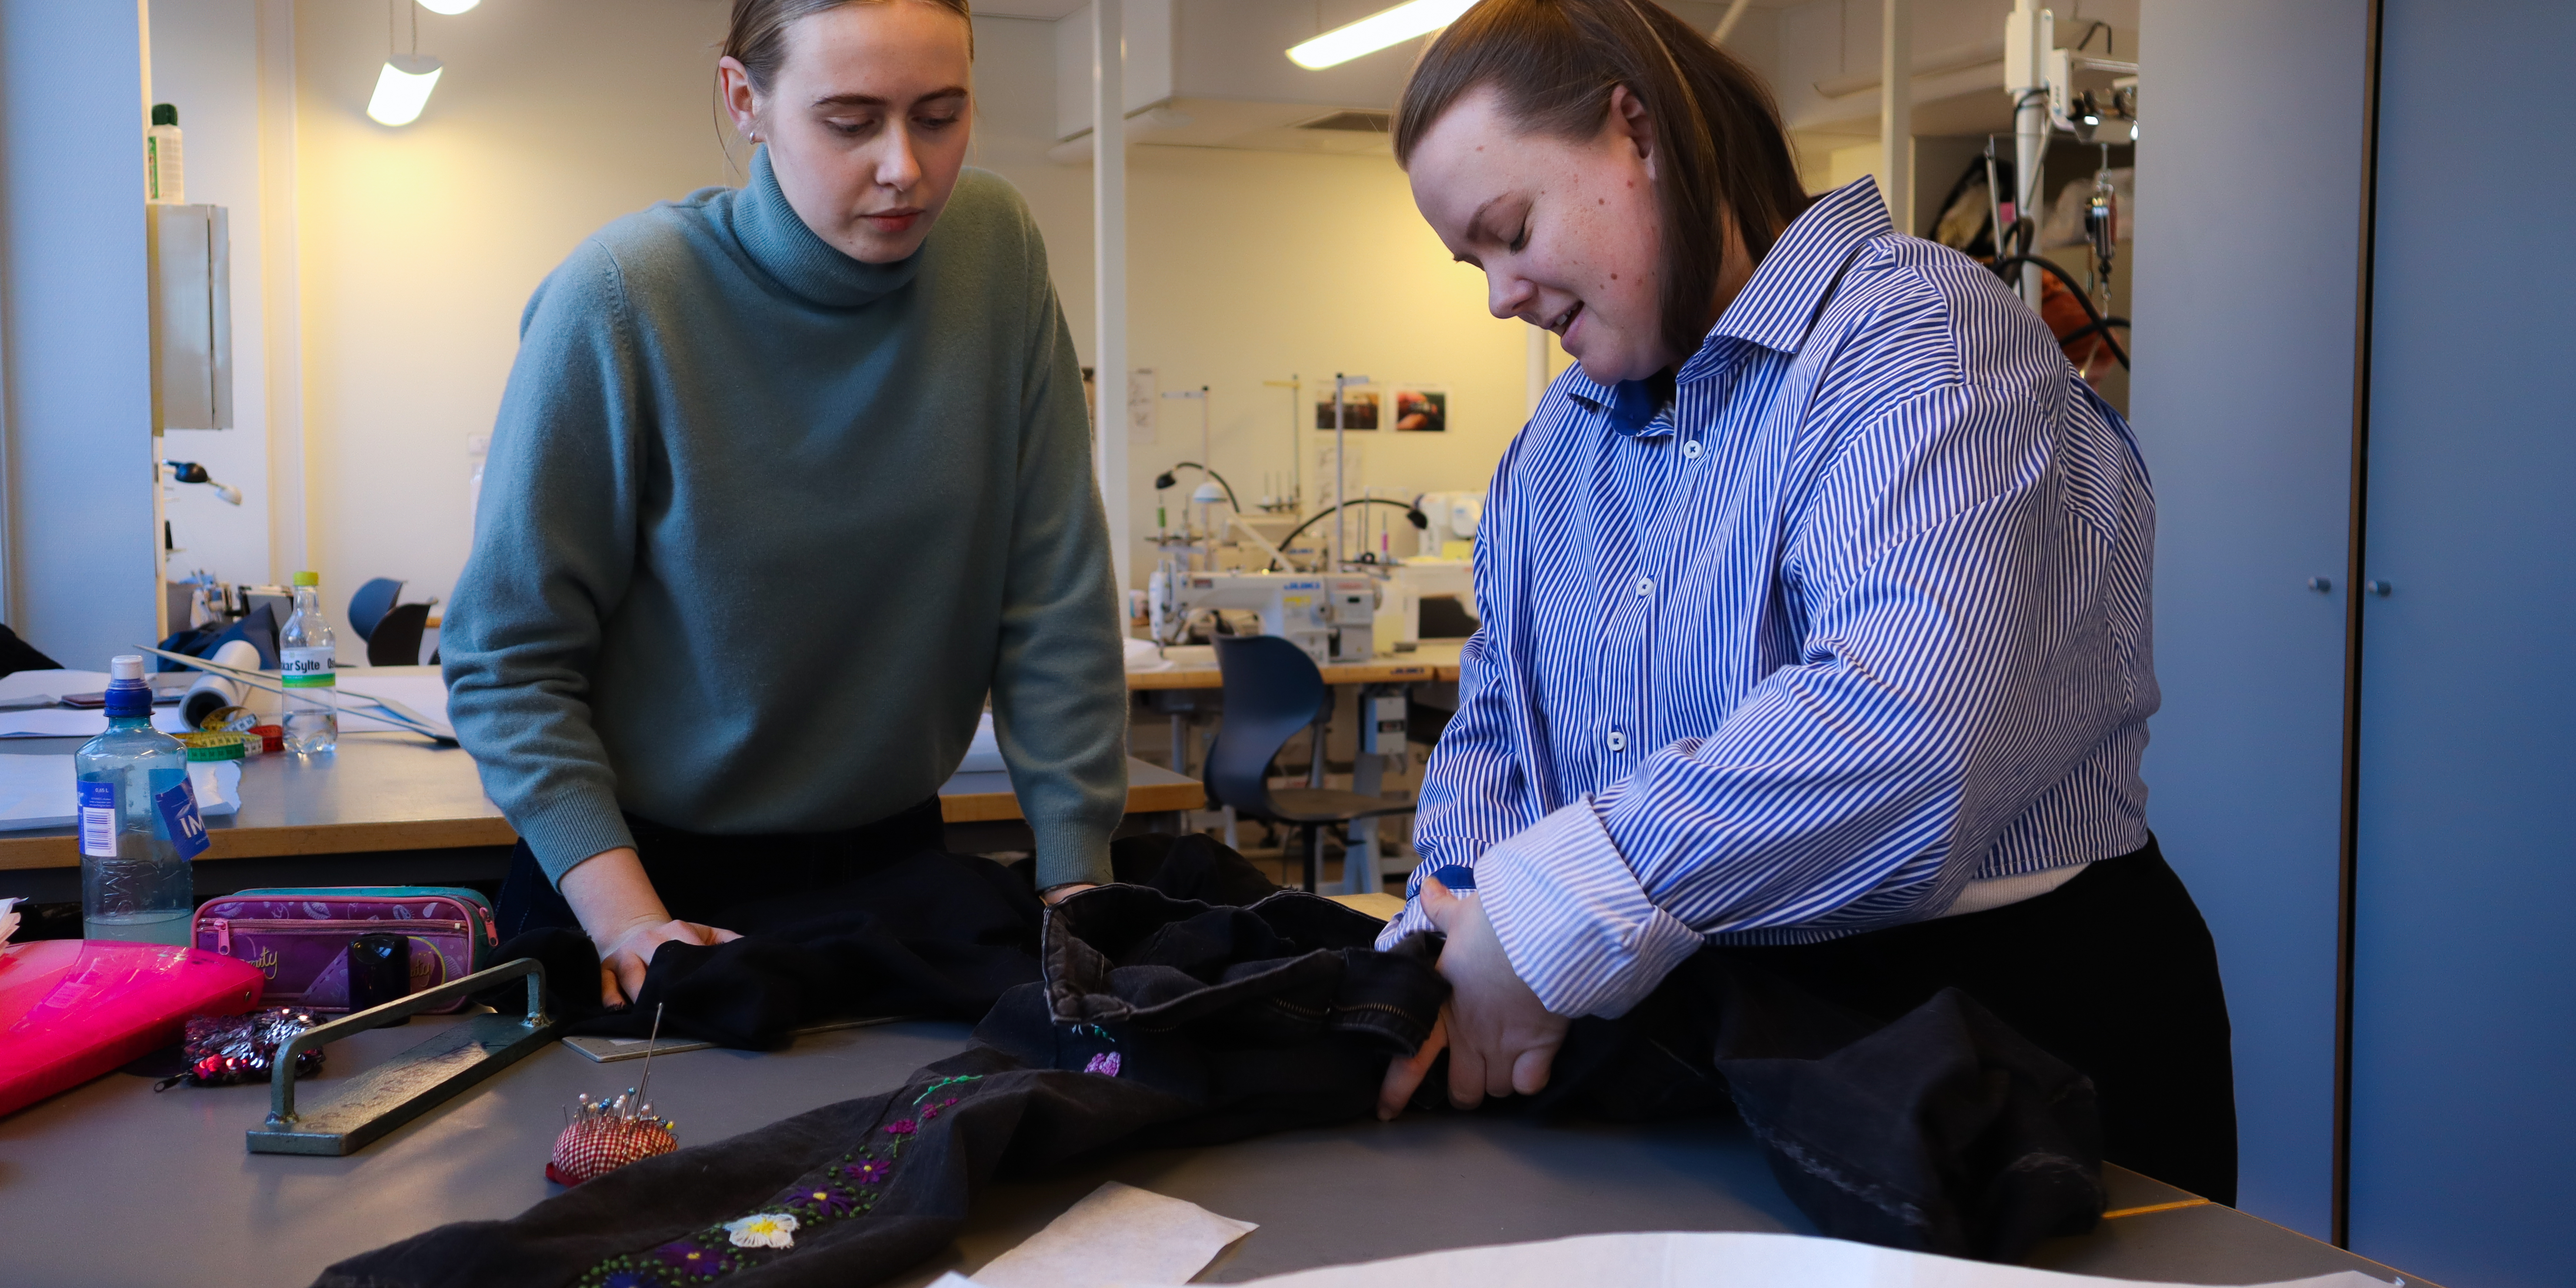 Kunst- og designstudentene Emilie og Anne reparerer en bukse i et klasserom på OsloMet.